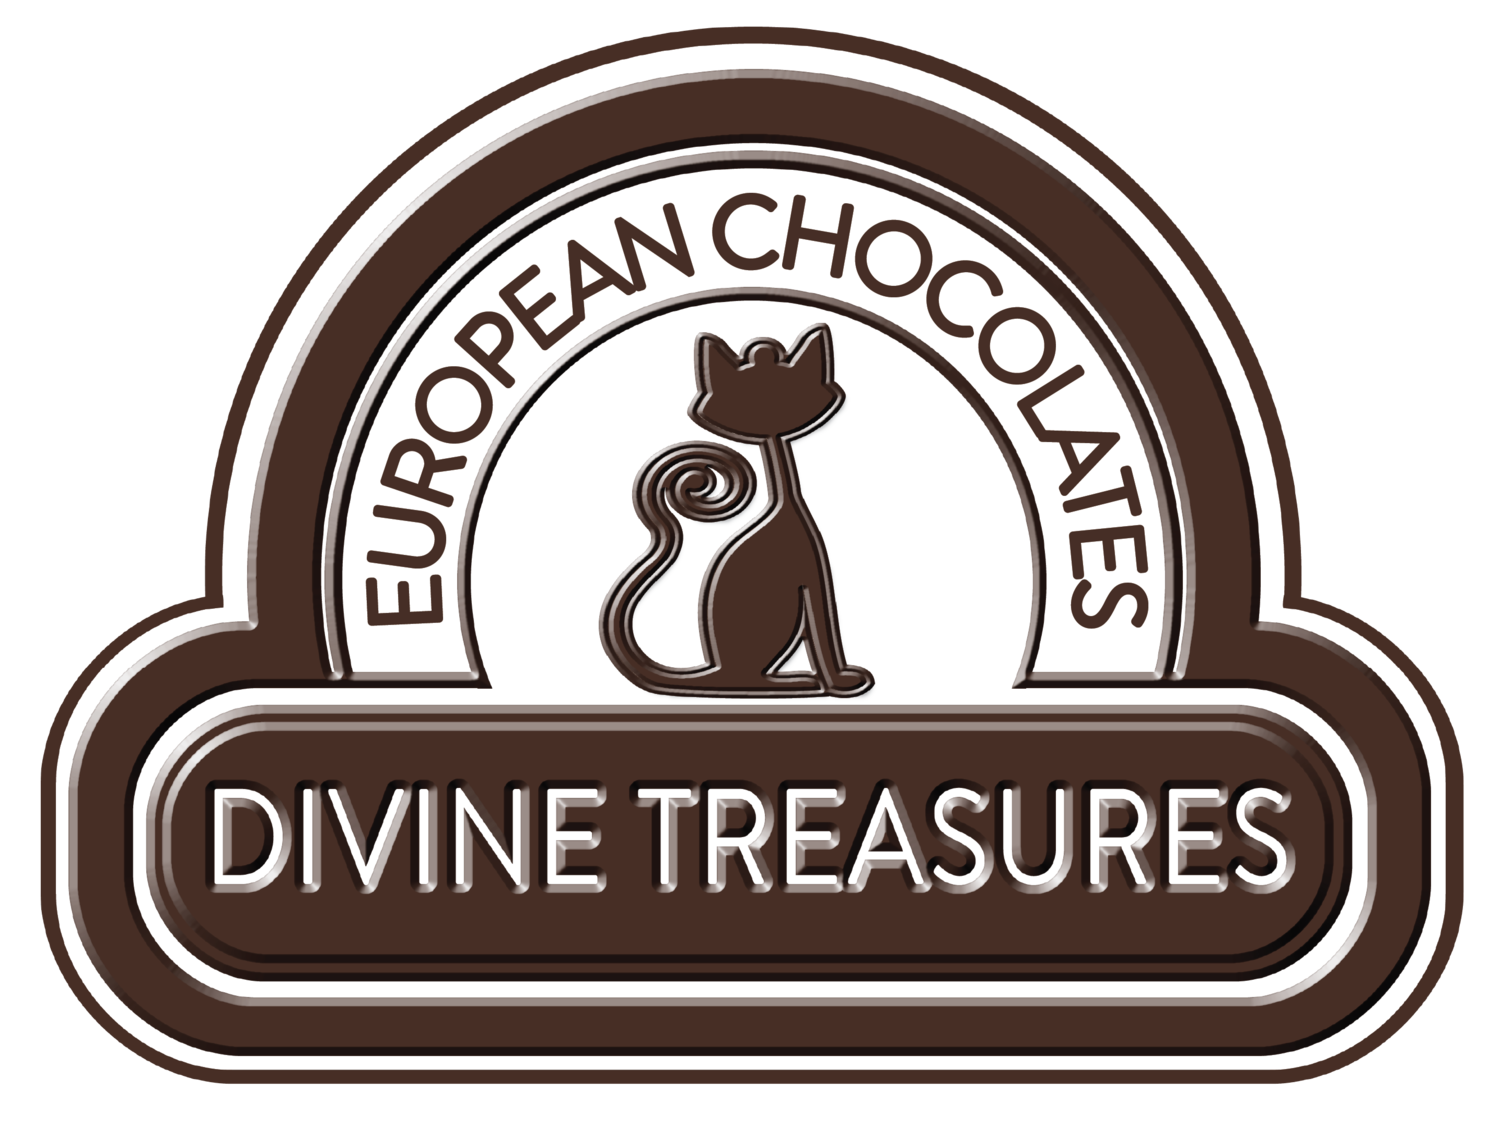 Divine Treasures Chocolates